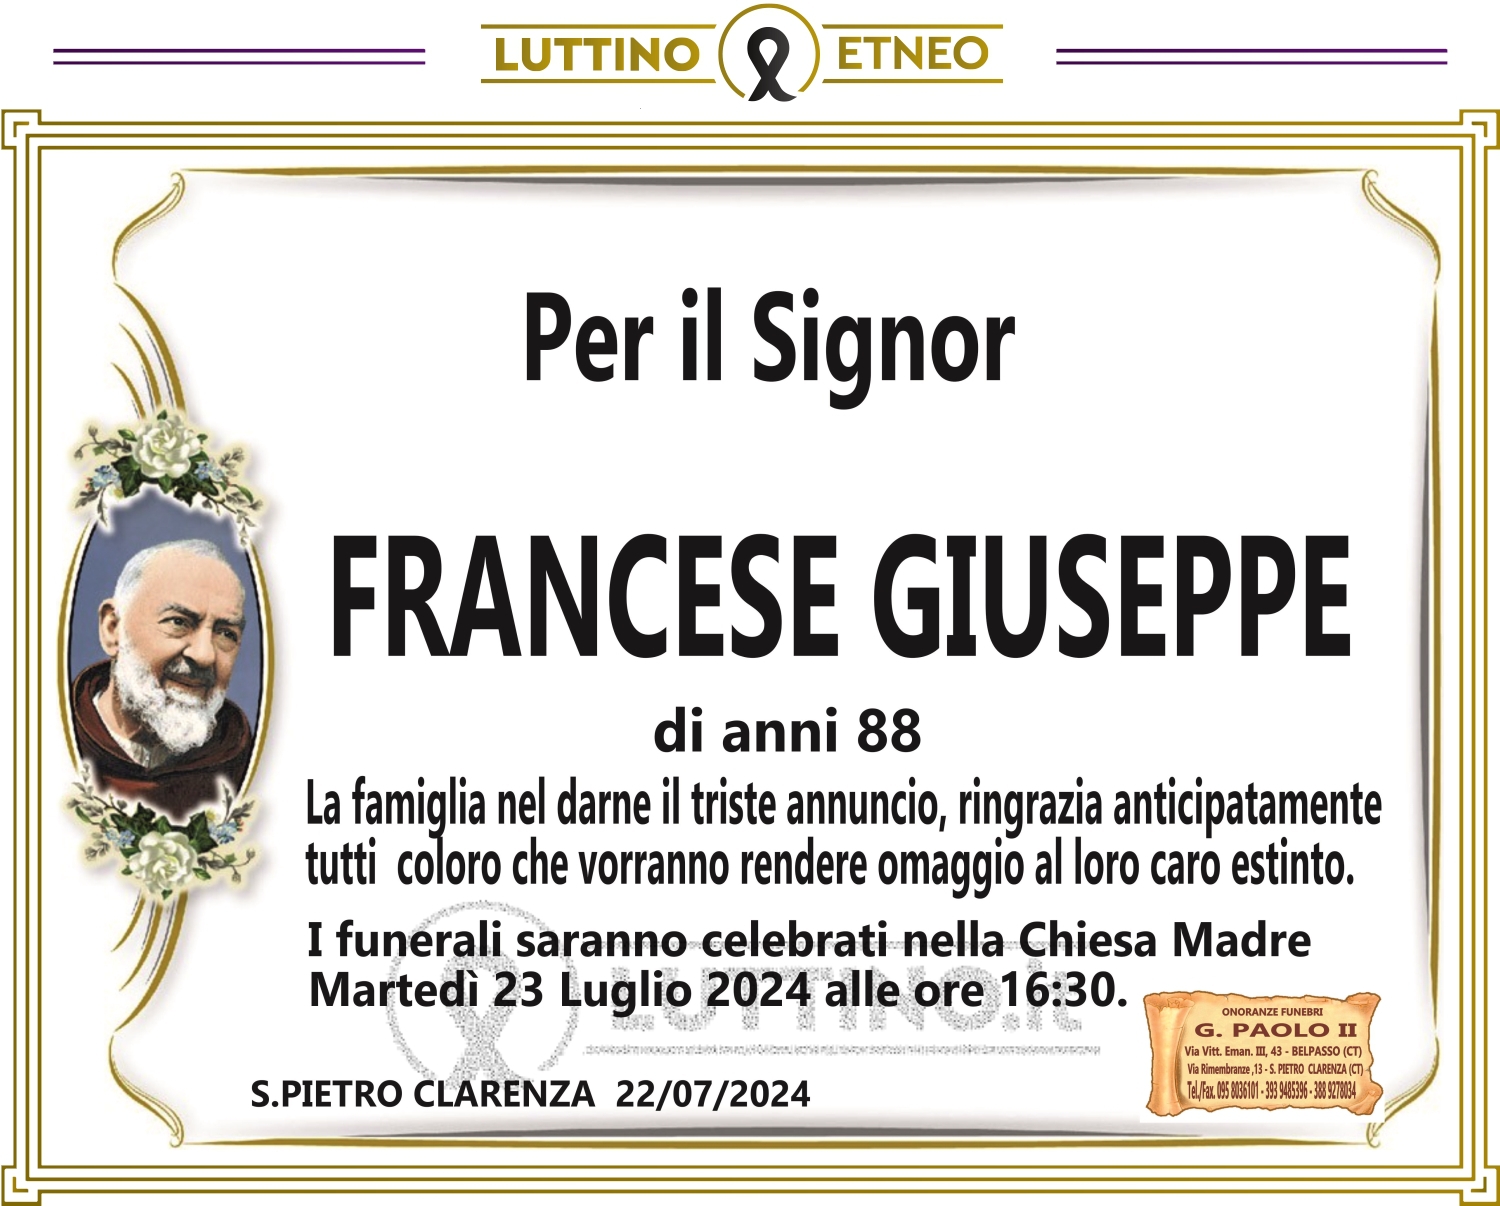 Giuseppe Francese